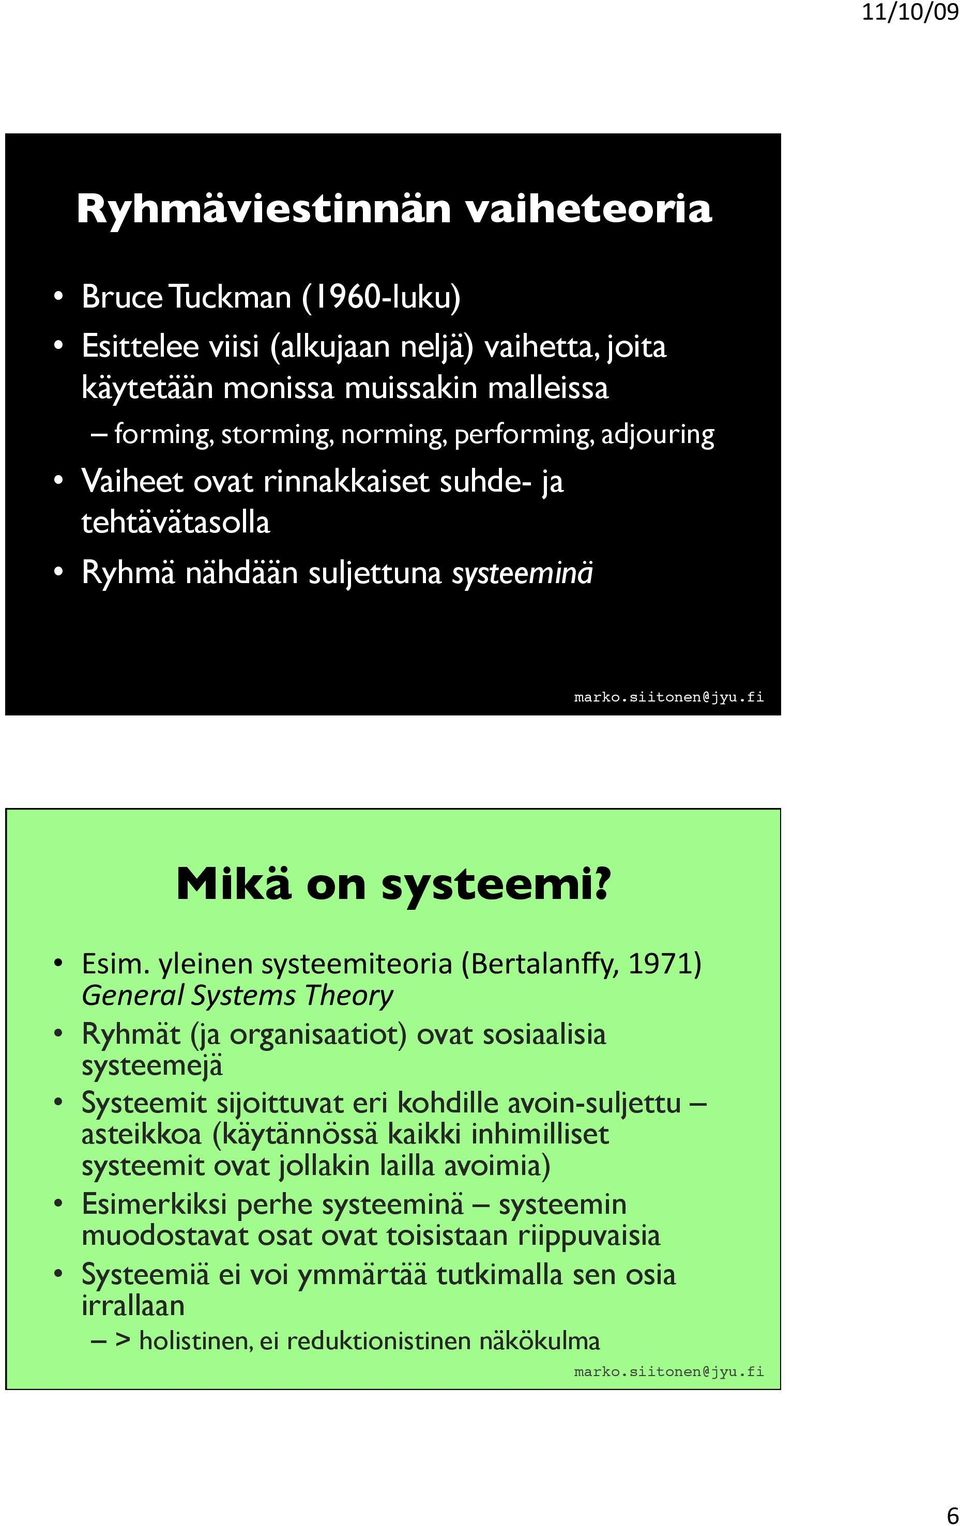 yleinen systeemiteoria (Bertalanffy, 1971) General Systems Theory Ryhmät (ja organisaatiot) ovat sosiaalisia systeemejä Systeemit sijoittuvat eri kohdille avoin-suljettu asteikkoa